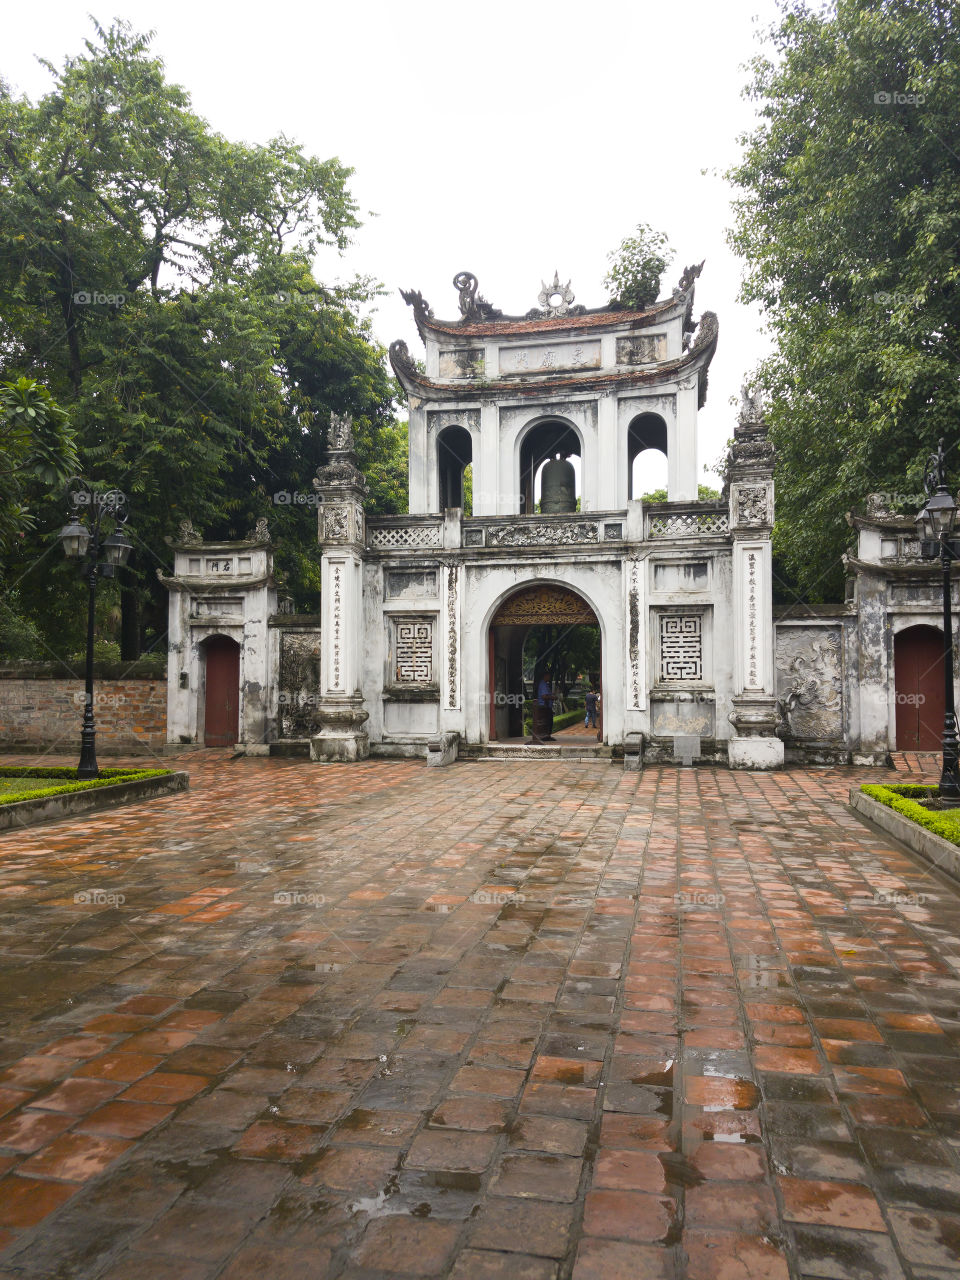 Temple of Literature - Hanoi, Vietnam